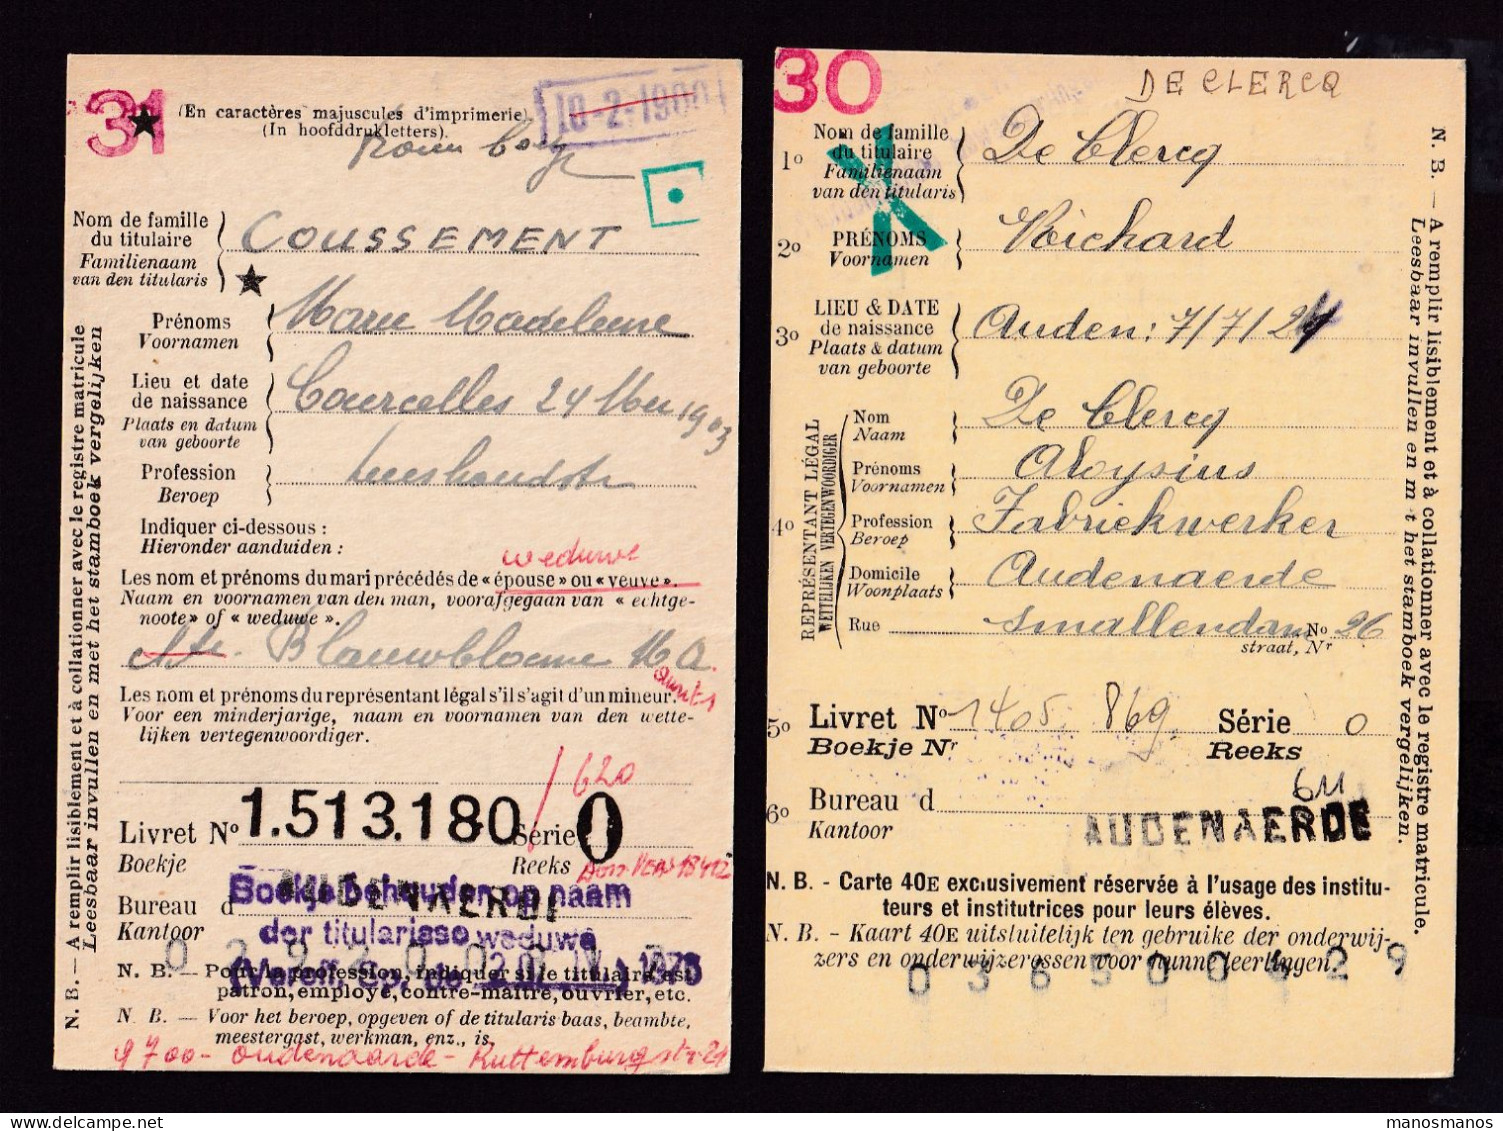 DDFF 562 -- AUDENAERDE B Et C - 2 X Carte De Caisse D'Epargne Postale/Postspaarkaskaart 1930/1931 - Petites Griffes - Portofreiheit